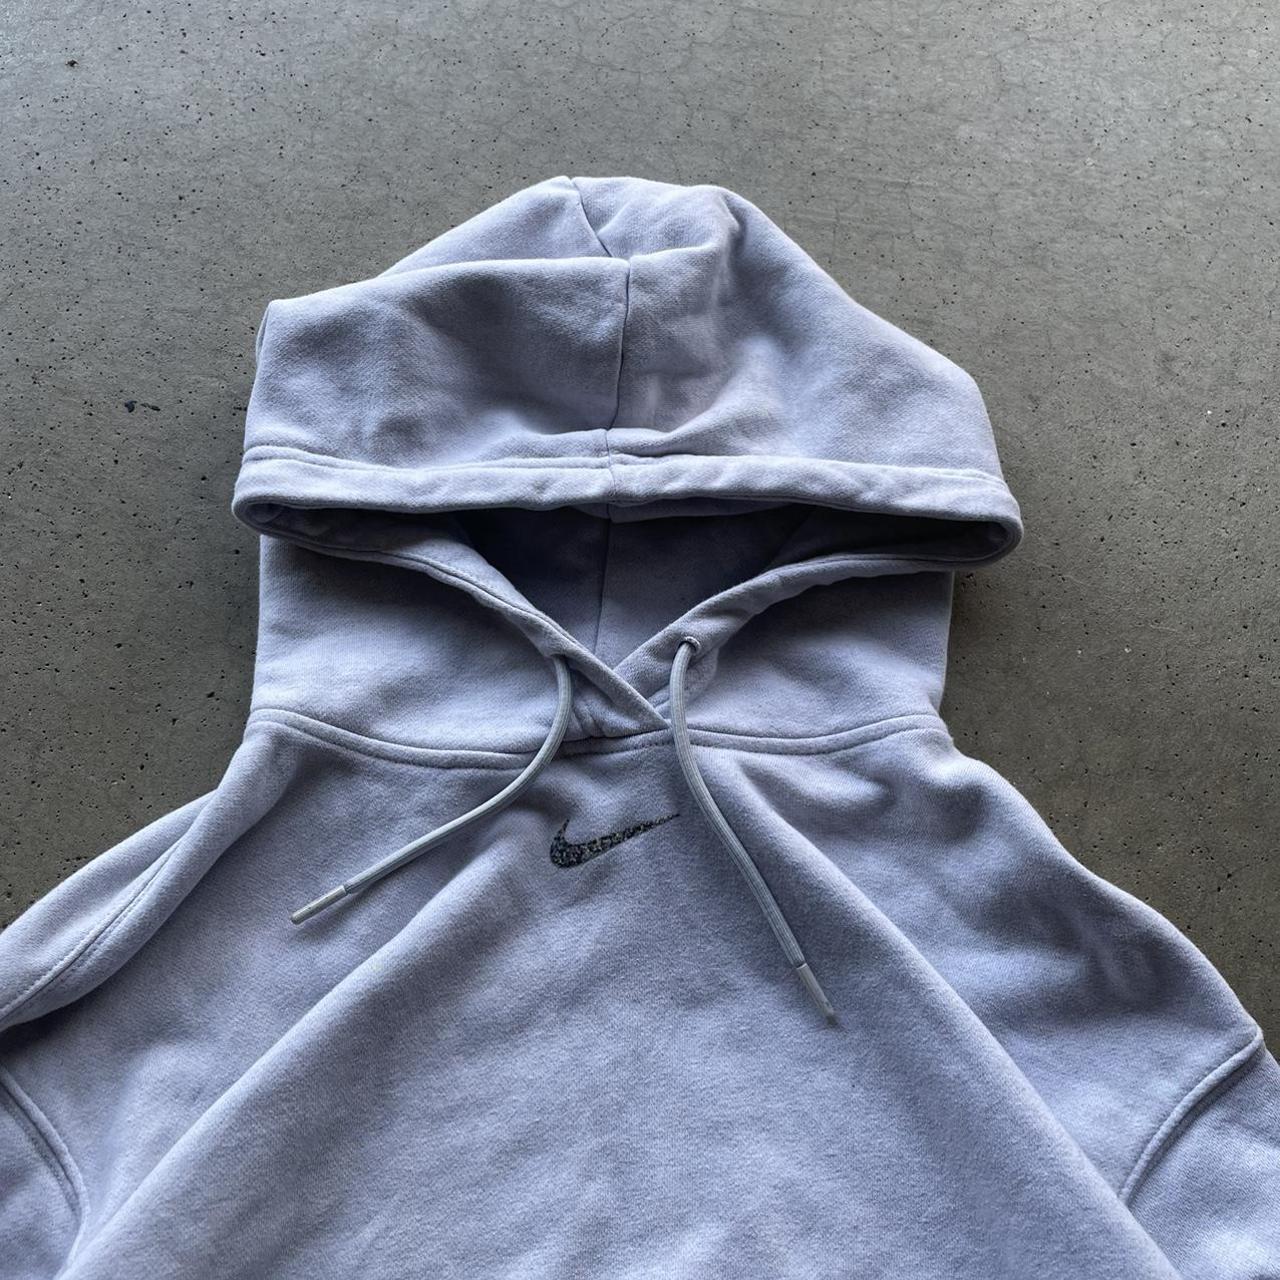 Vintage Nike center swoosh hoodie white/grey... - Depop